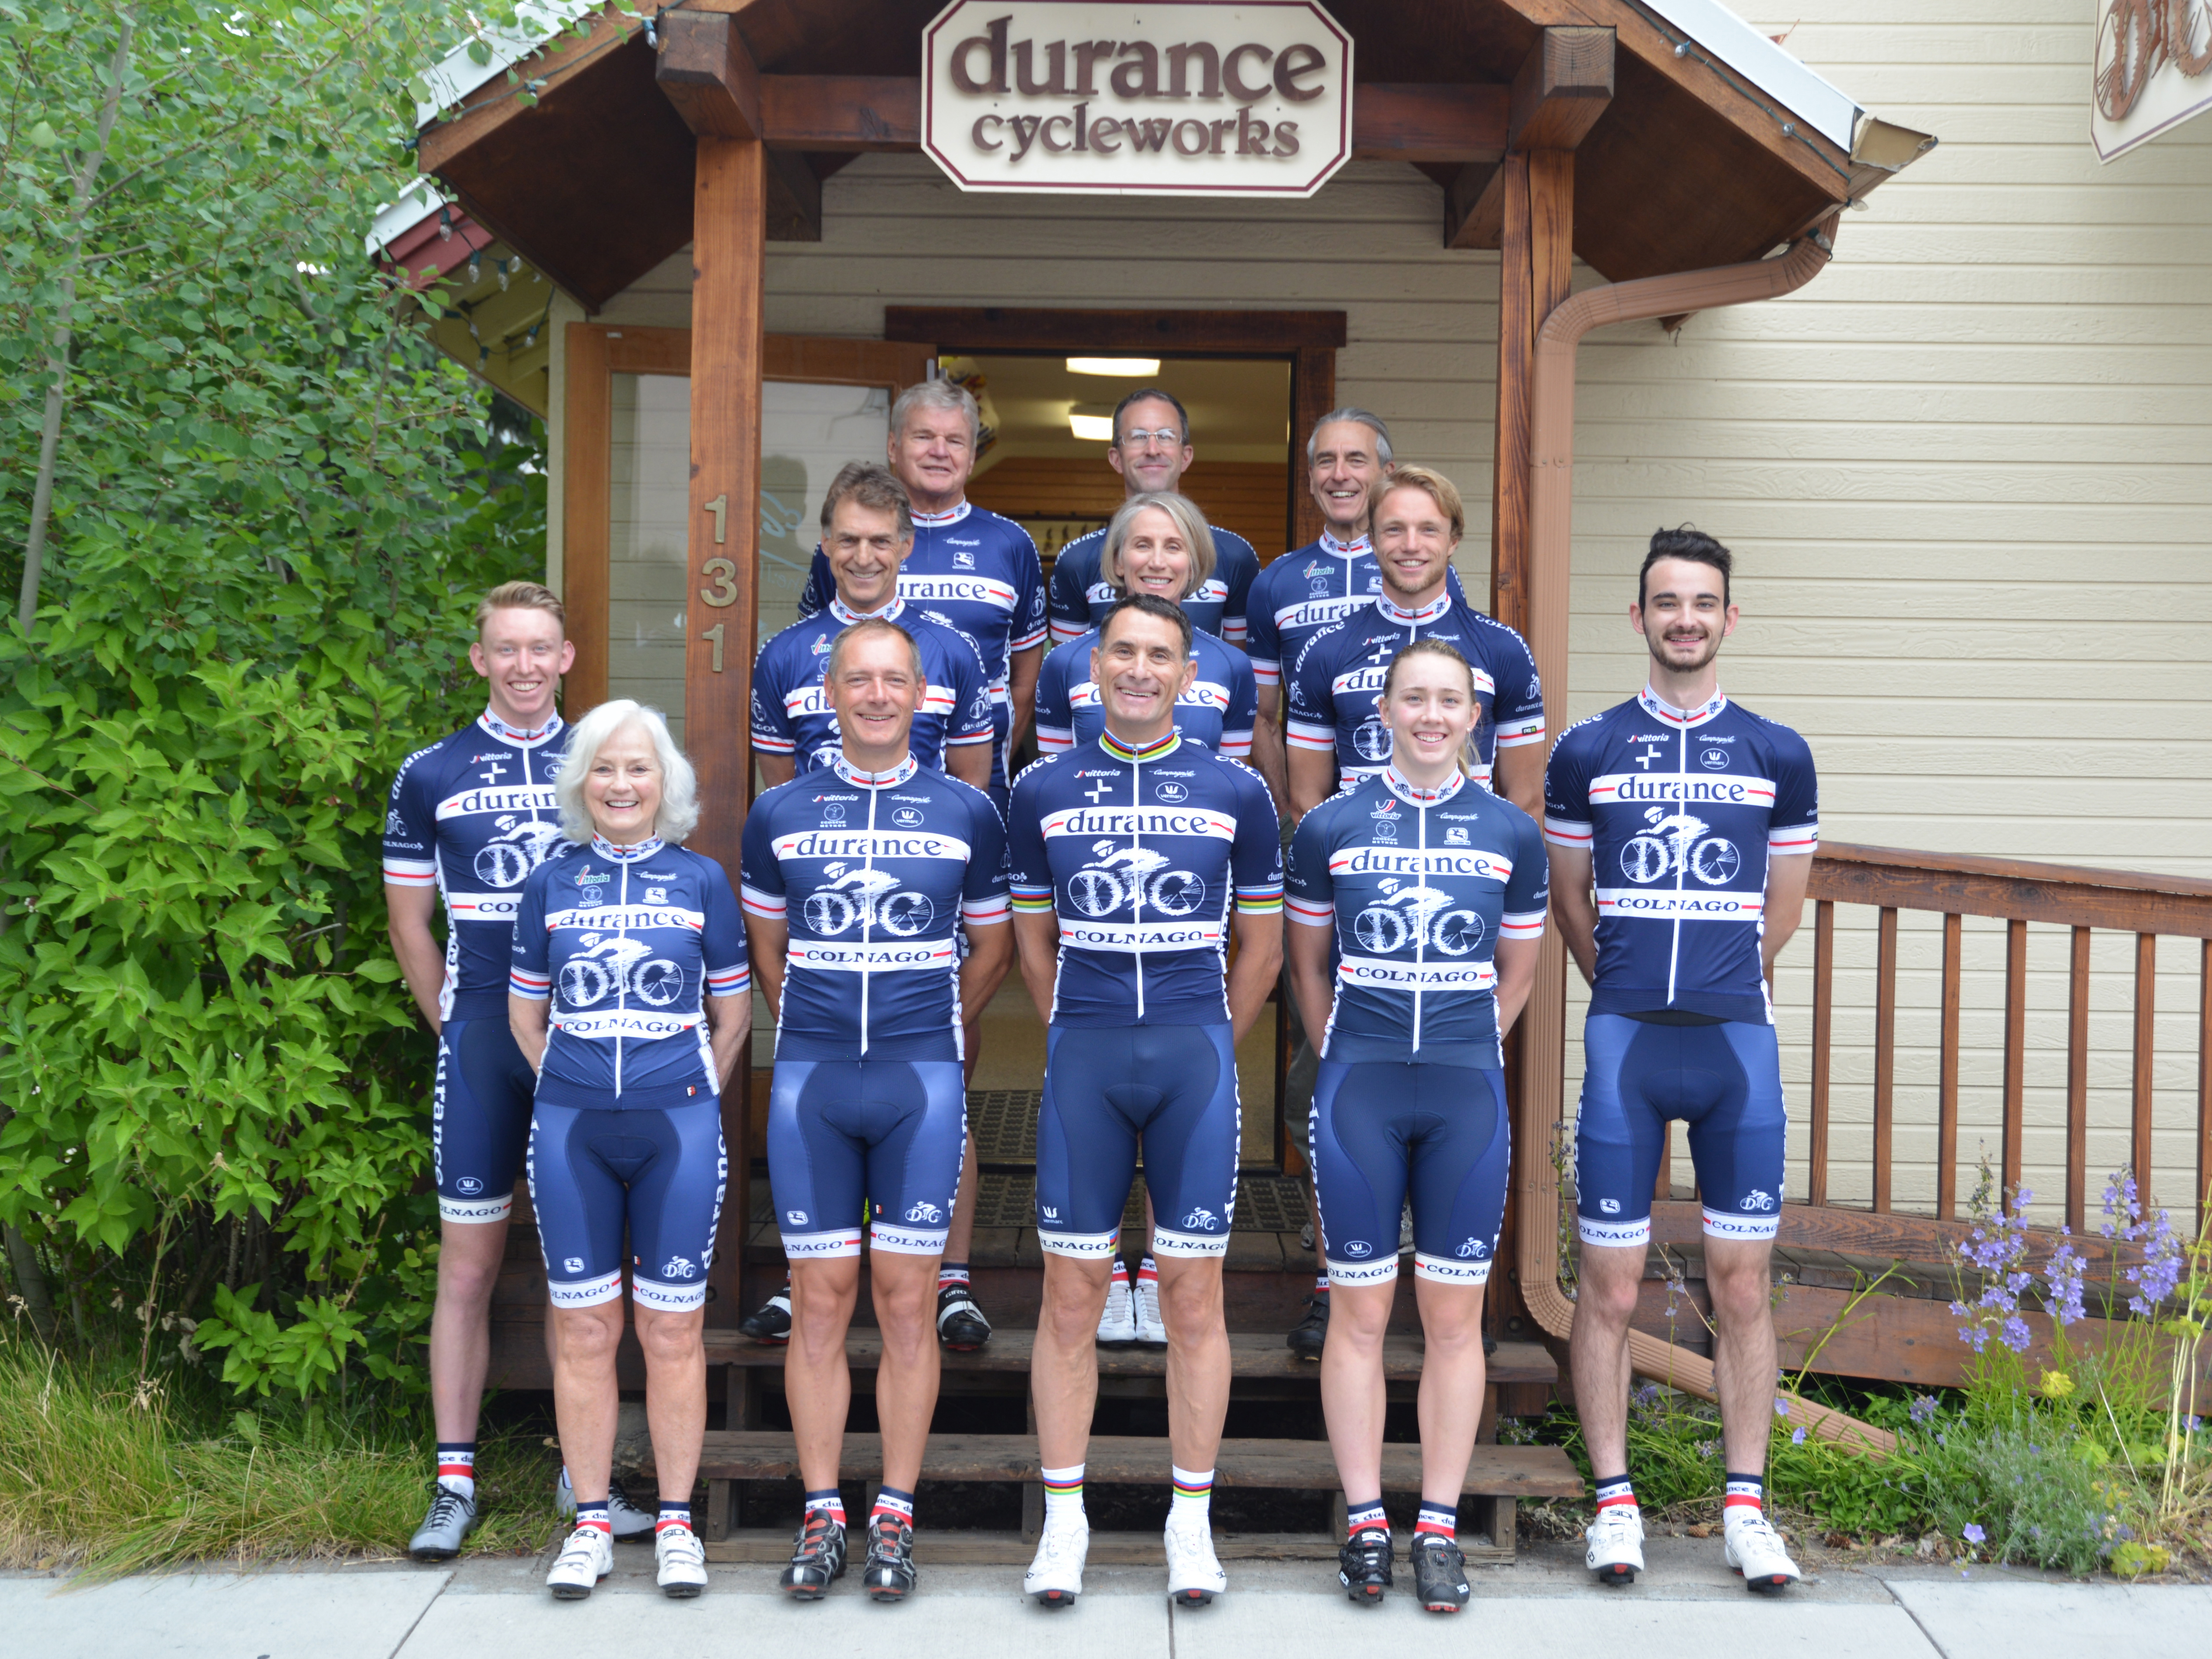 durance team 2019